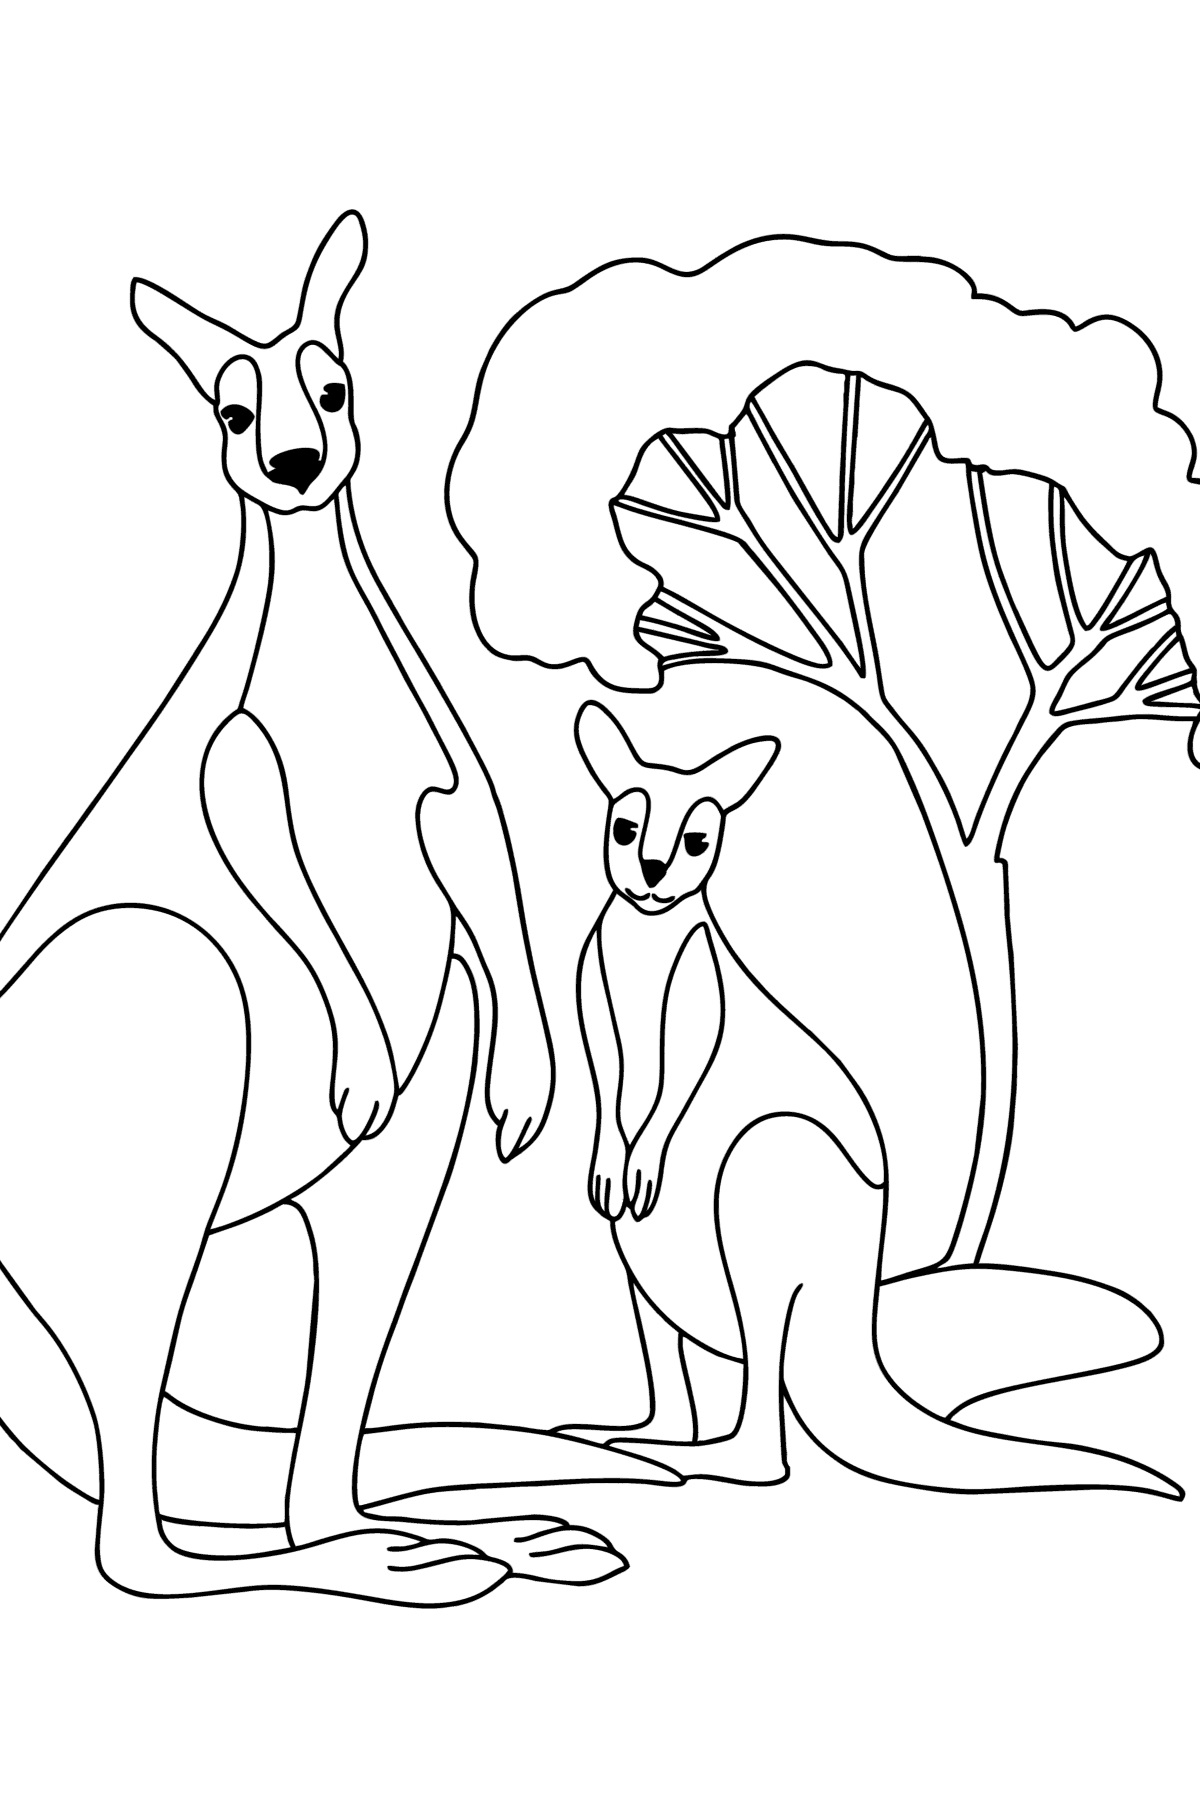 Värityskuva kenguru vauvan kanssa - Värityskuvat lapsille